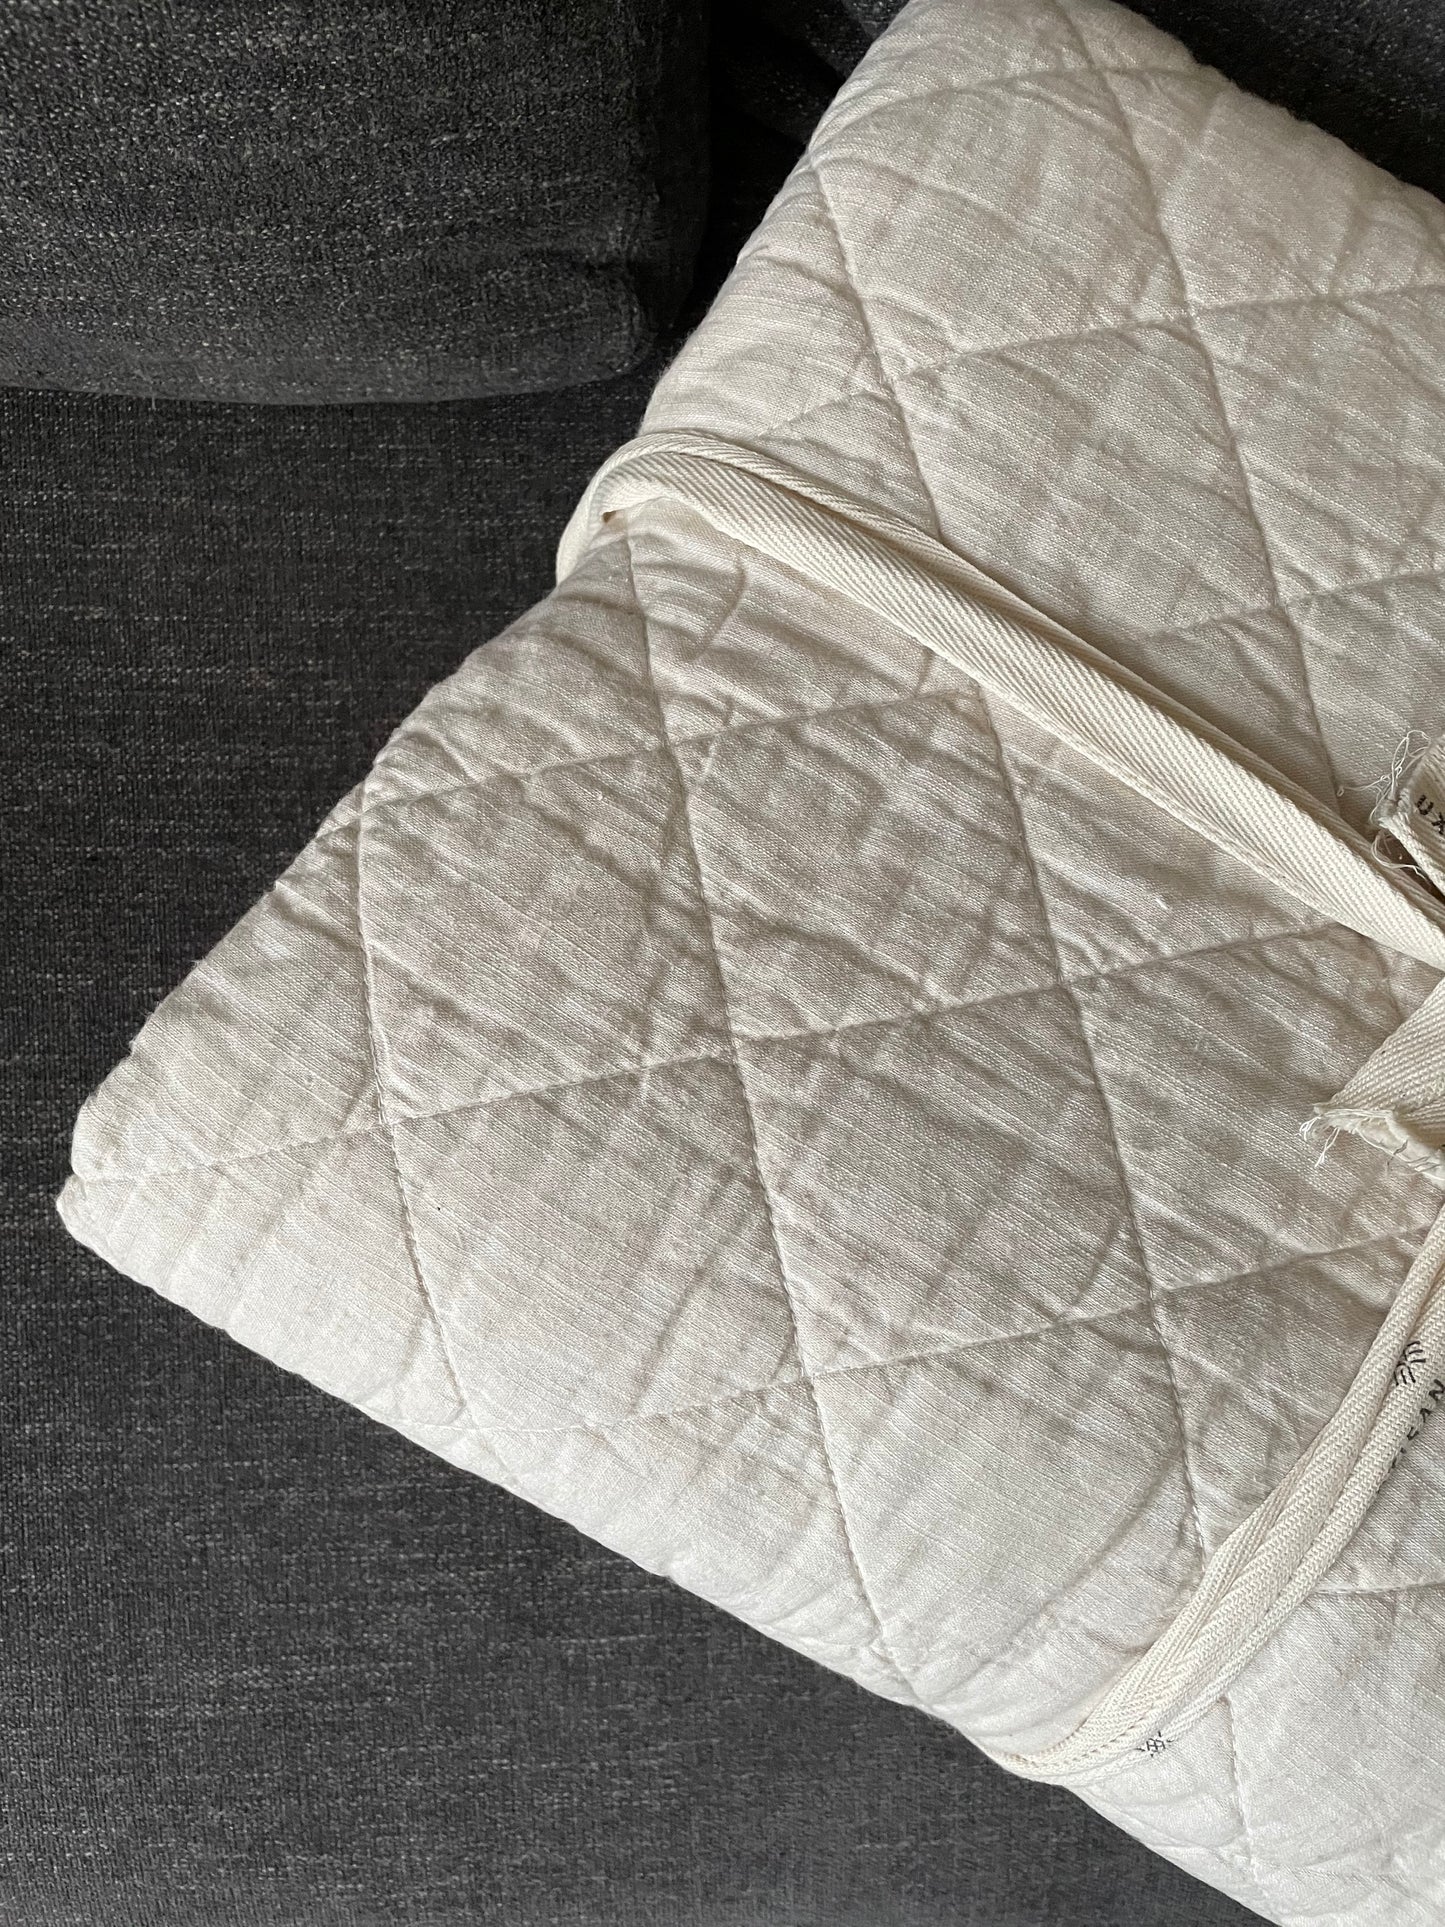 Queen Size Neutral Ivory Color 100% Cotton Quilt